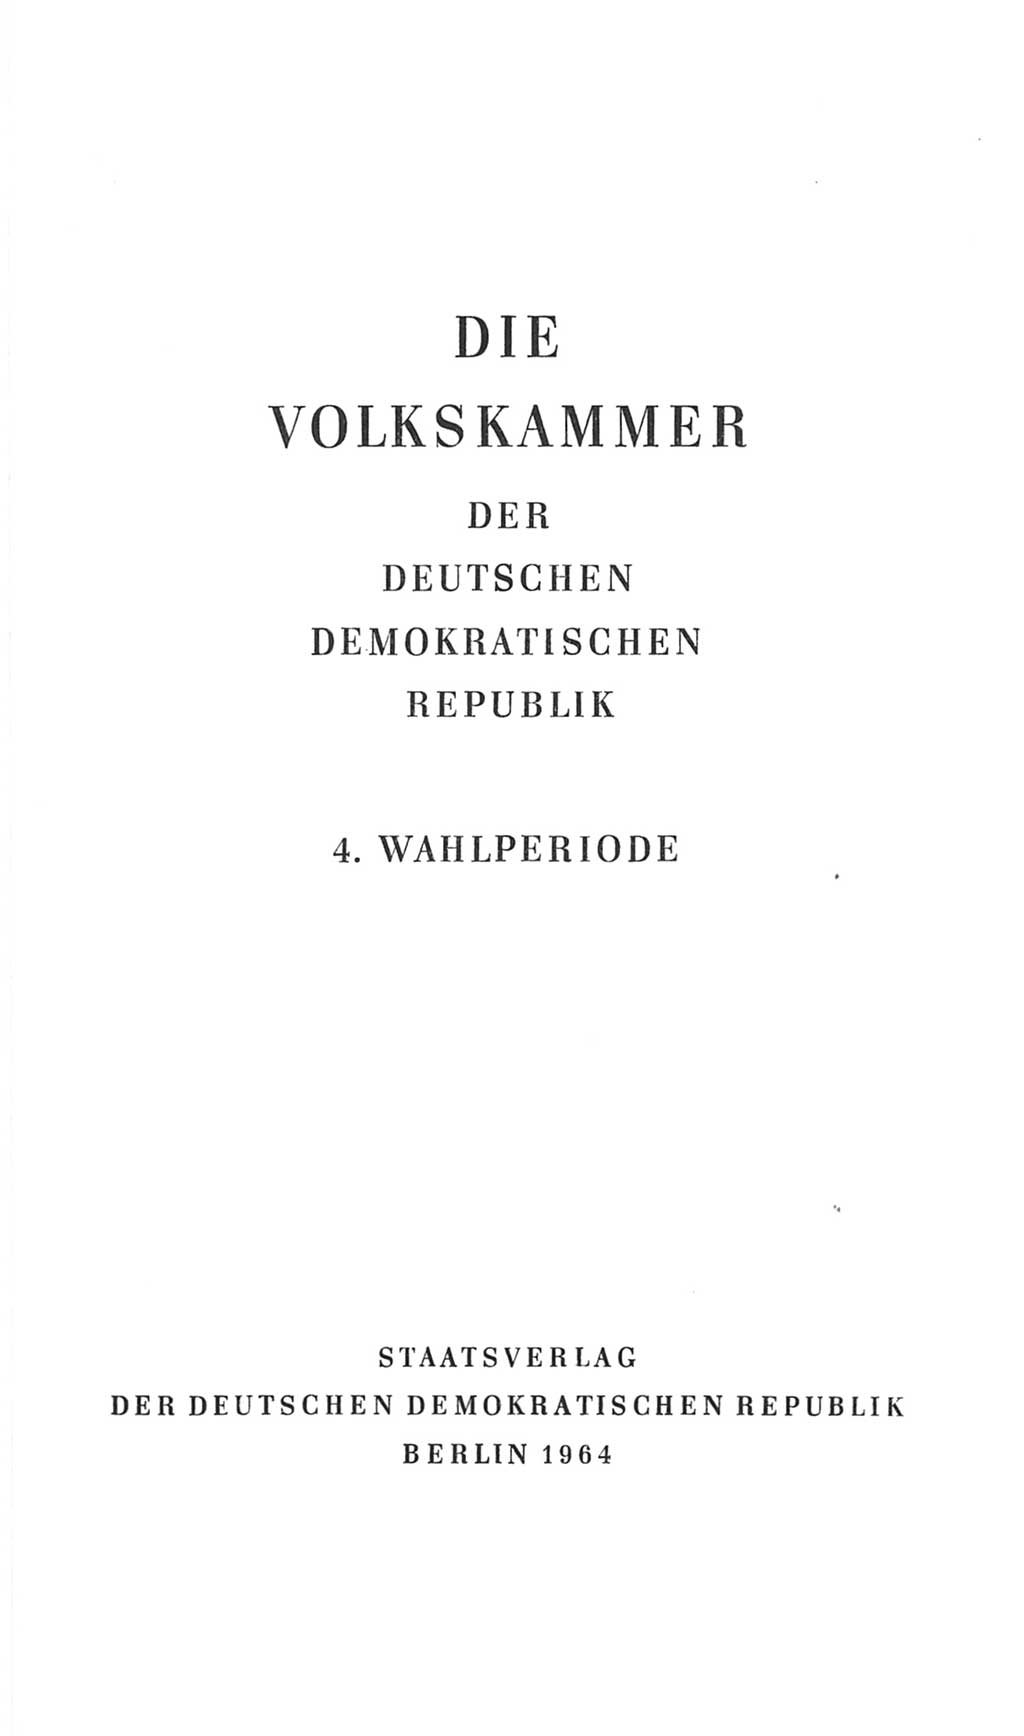 Volkskammer (VK) der Deutschen Demokratischen Republik (DDR), 4. Wahlperiode 1963-1967, Seite 3 (VK. DDR 4. WP. 1963-1967, S. 3)